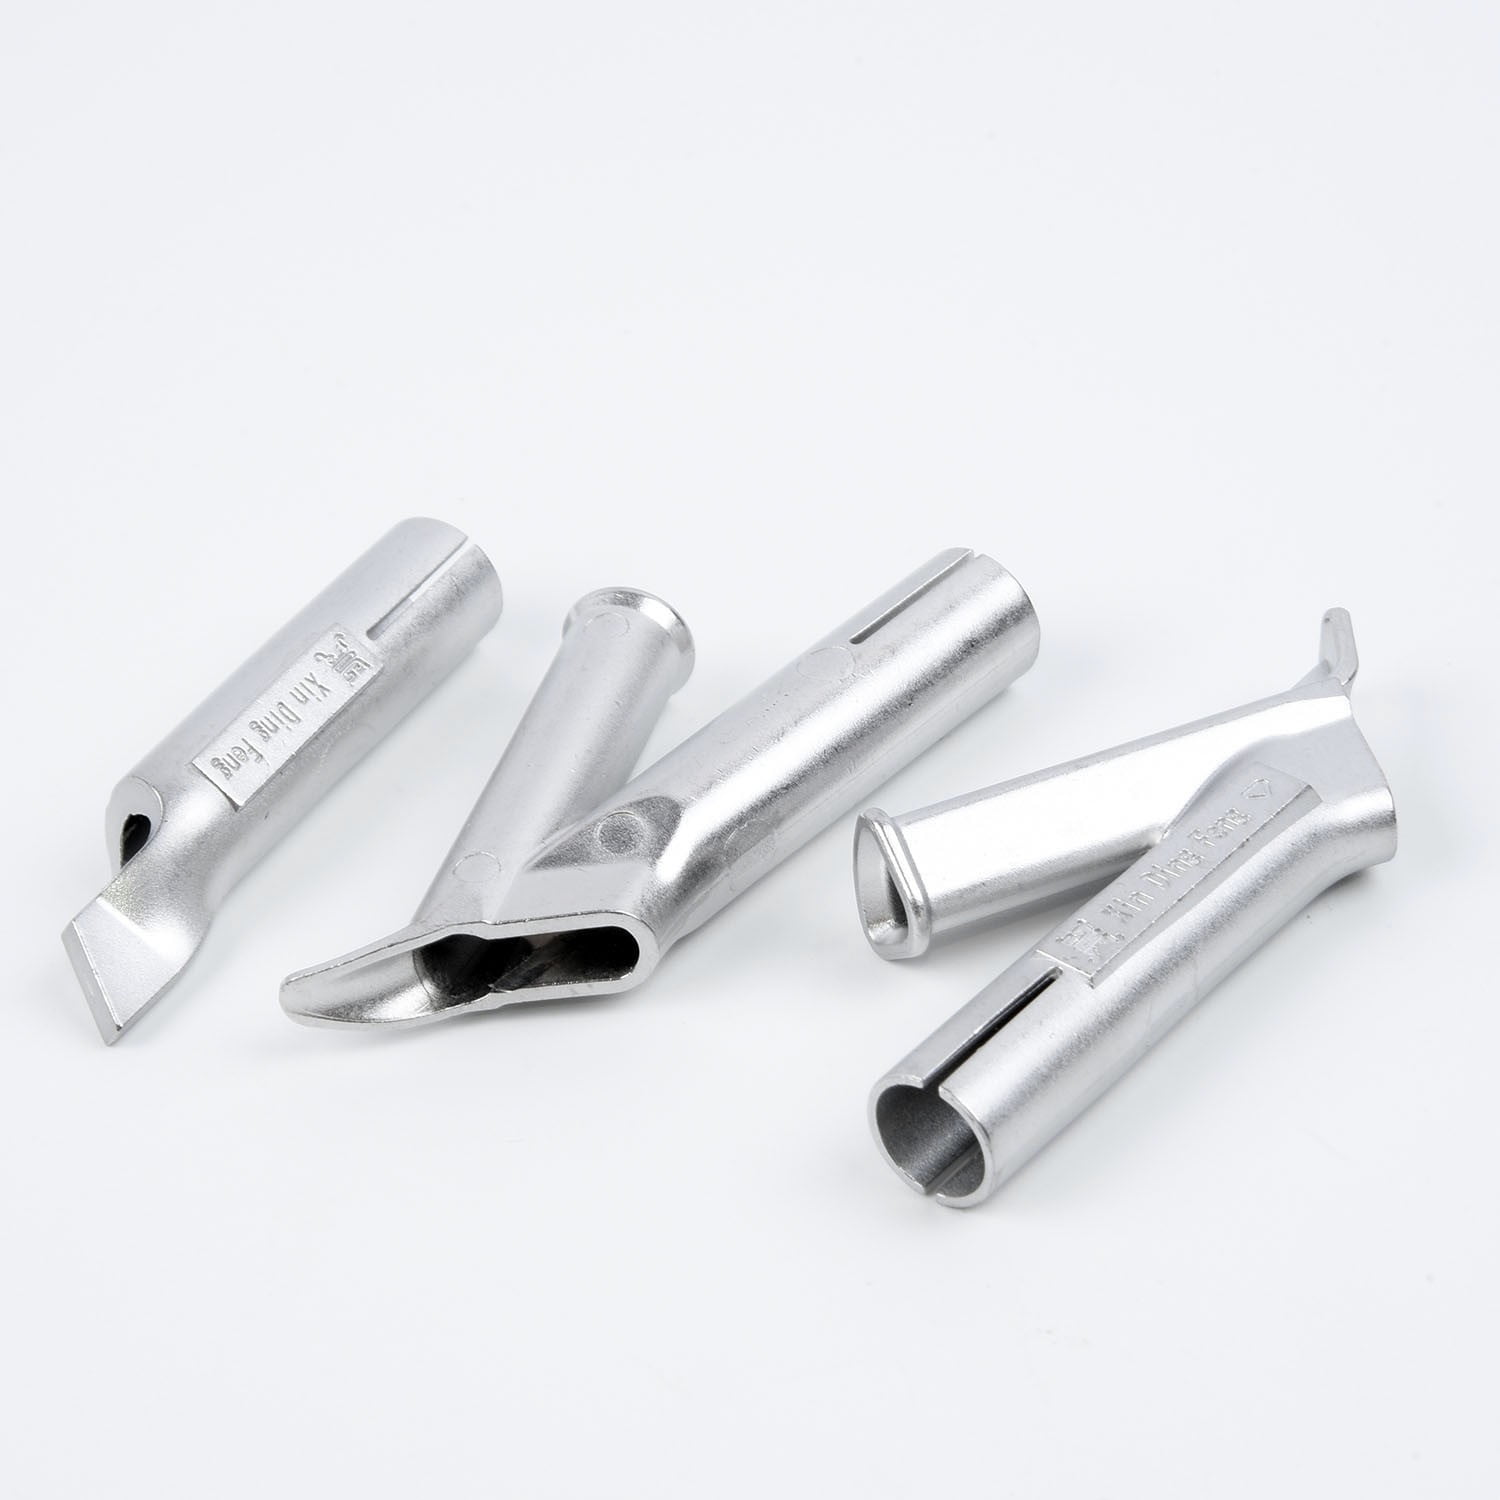 Kit Nozzle Nozzles 4pcs/Set Weld PVC Plastic Air Gun Titanium Alloy Hot 